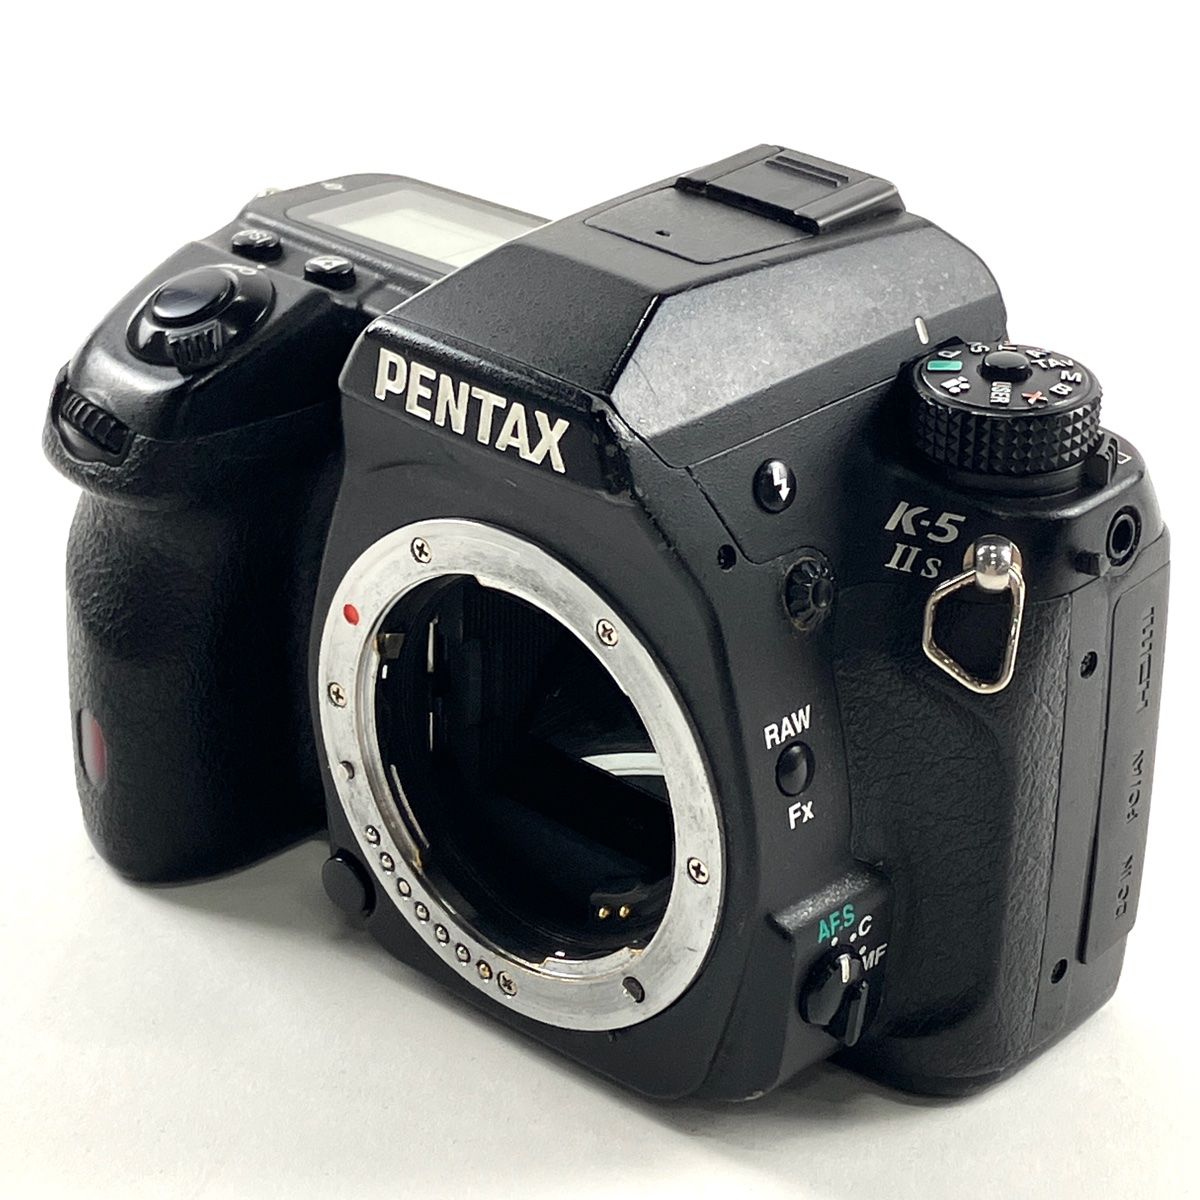 ペンタックス PENTAX K-5 II S ボディ デジタル 一眼レフカメラ 【中古 